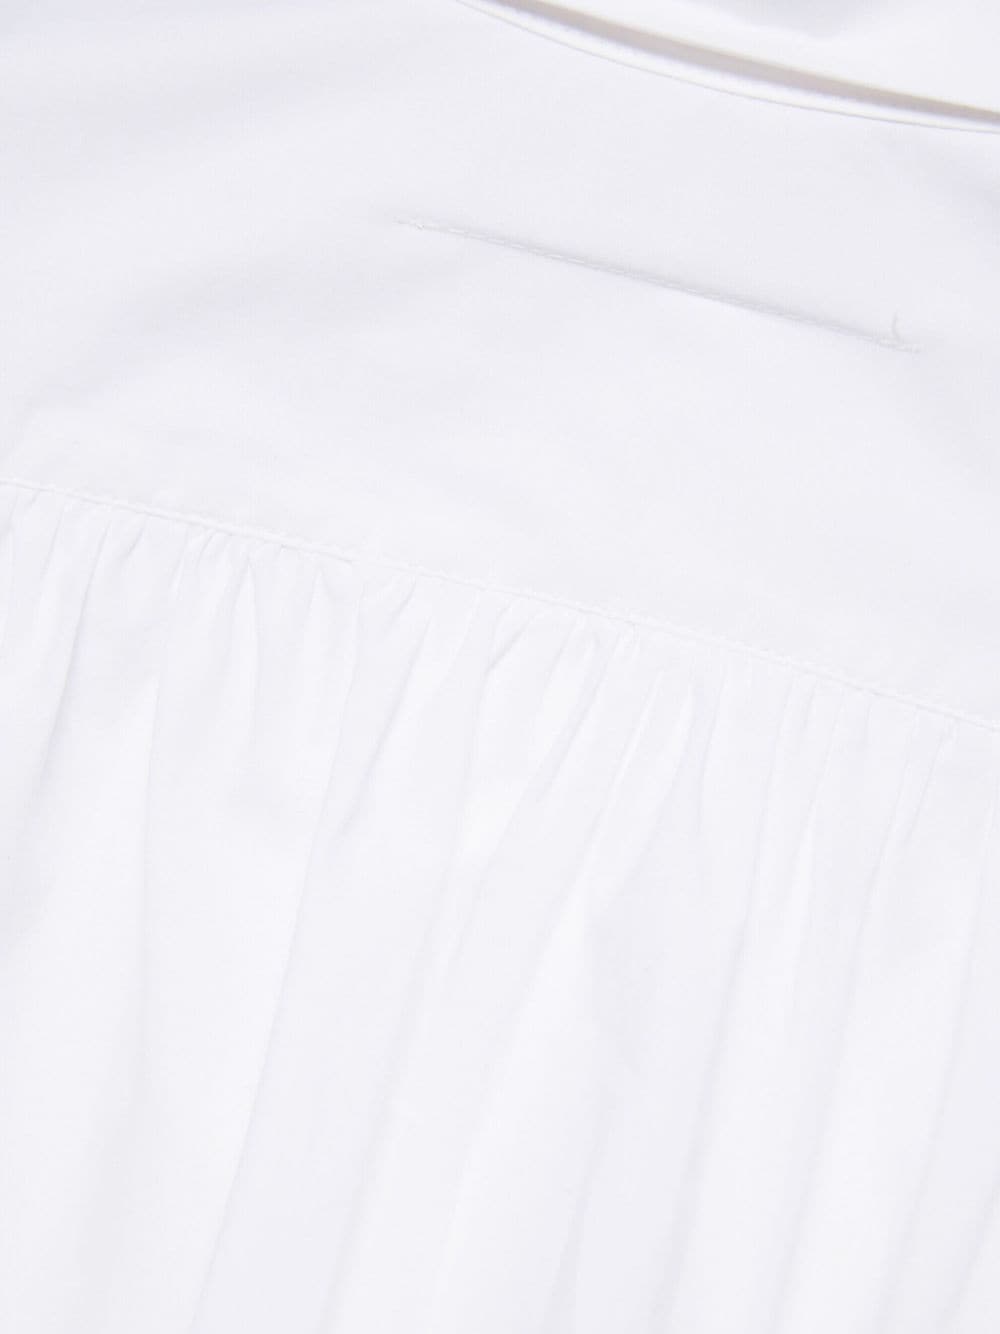 Camicia bianca unisex